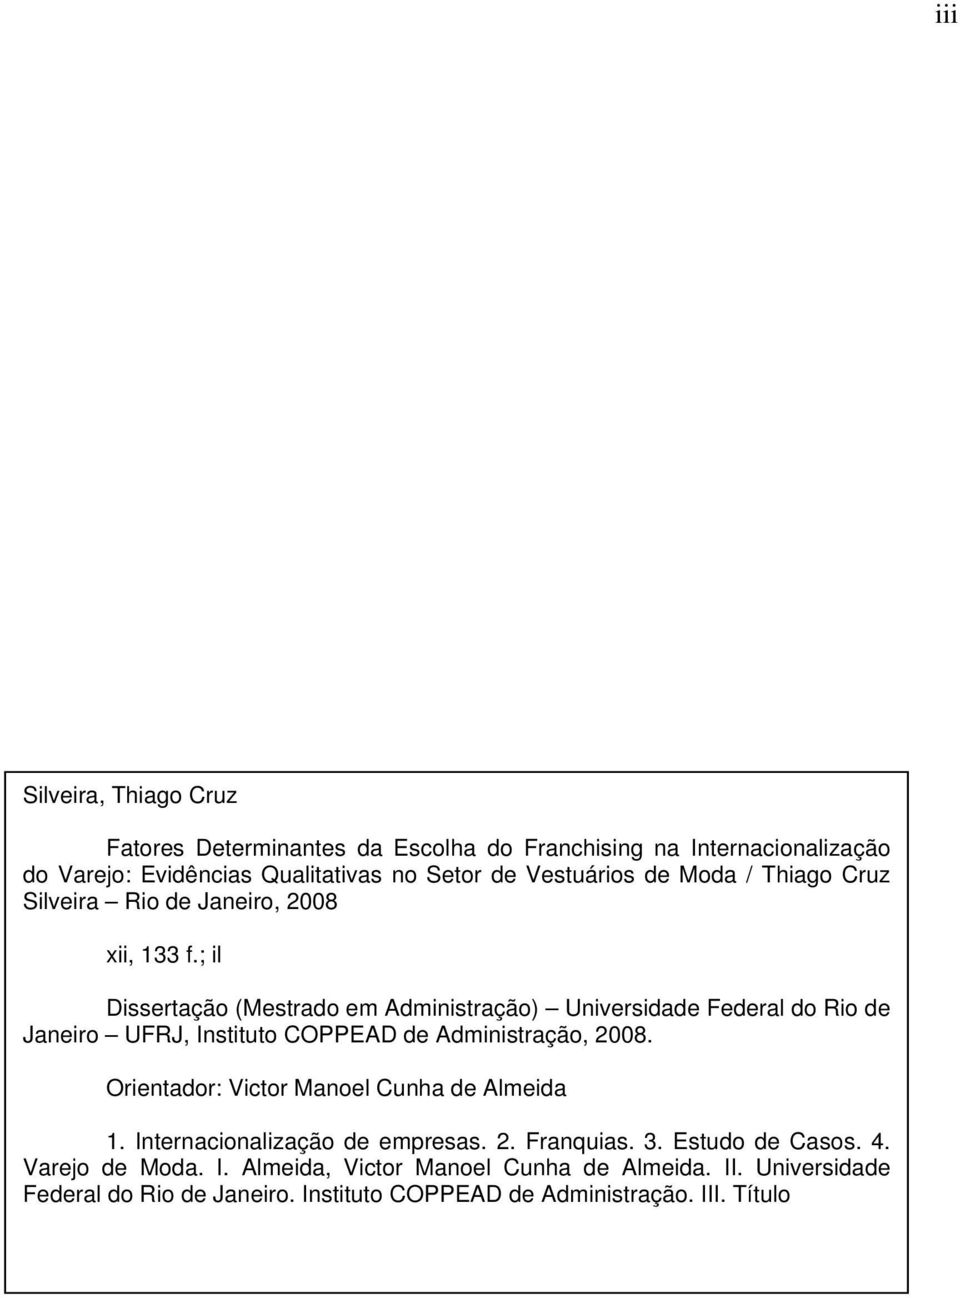 ; il Dissertação (Mestrado em Administração) Universidade Federal do Rio de Janeiro UFRJ, Instituto COPPEAD de Administração, 2008.